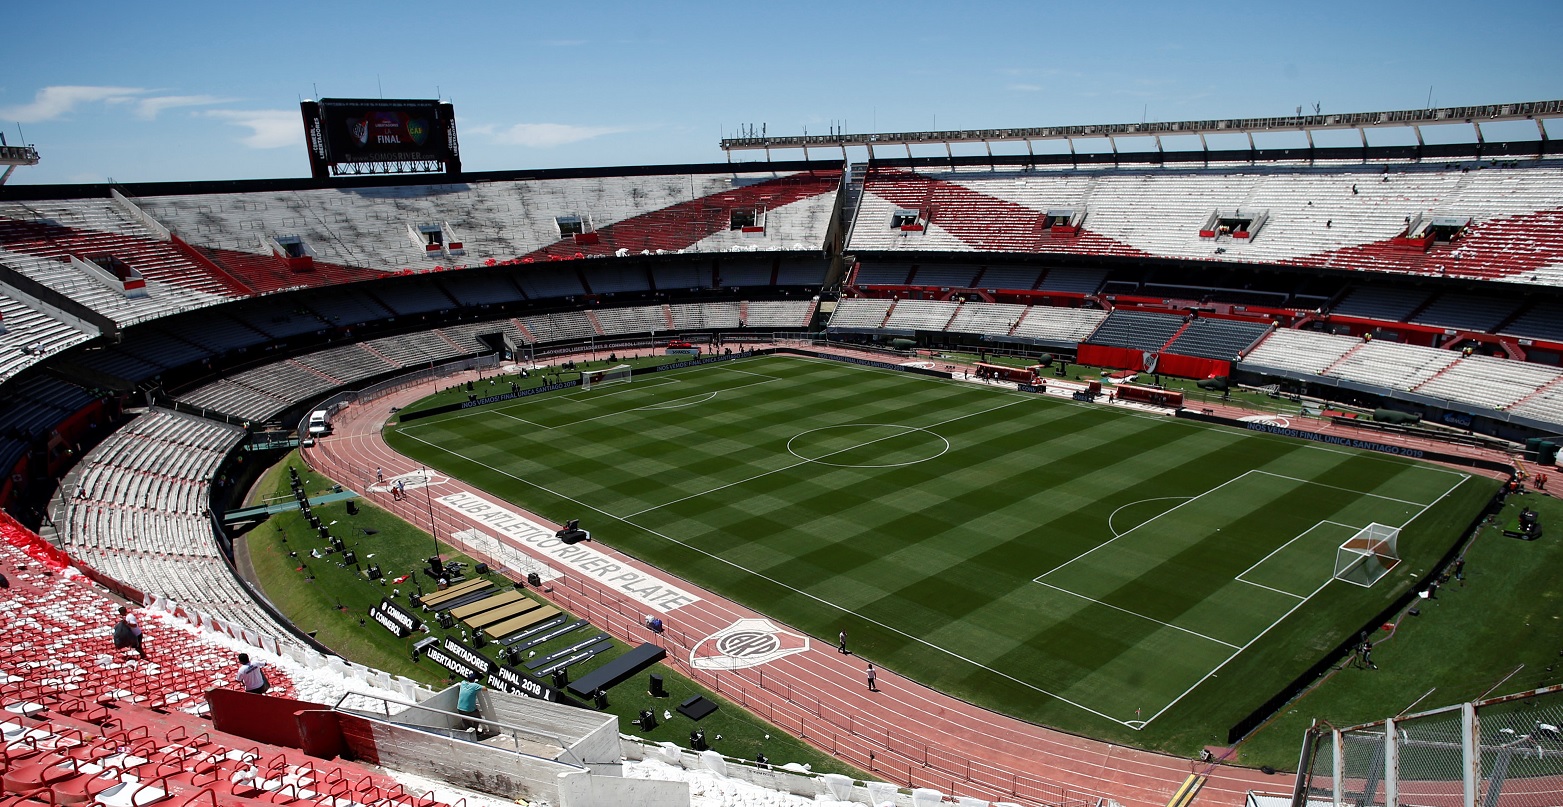 Posponen final de Copa Libertadores River Plate vs Boca Juniors que jugarían este domingo